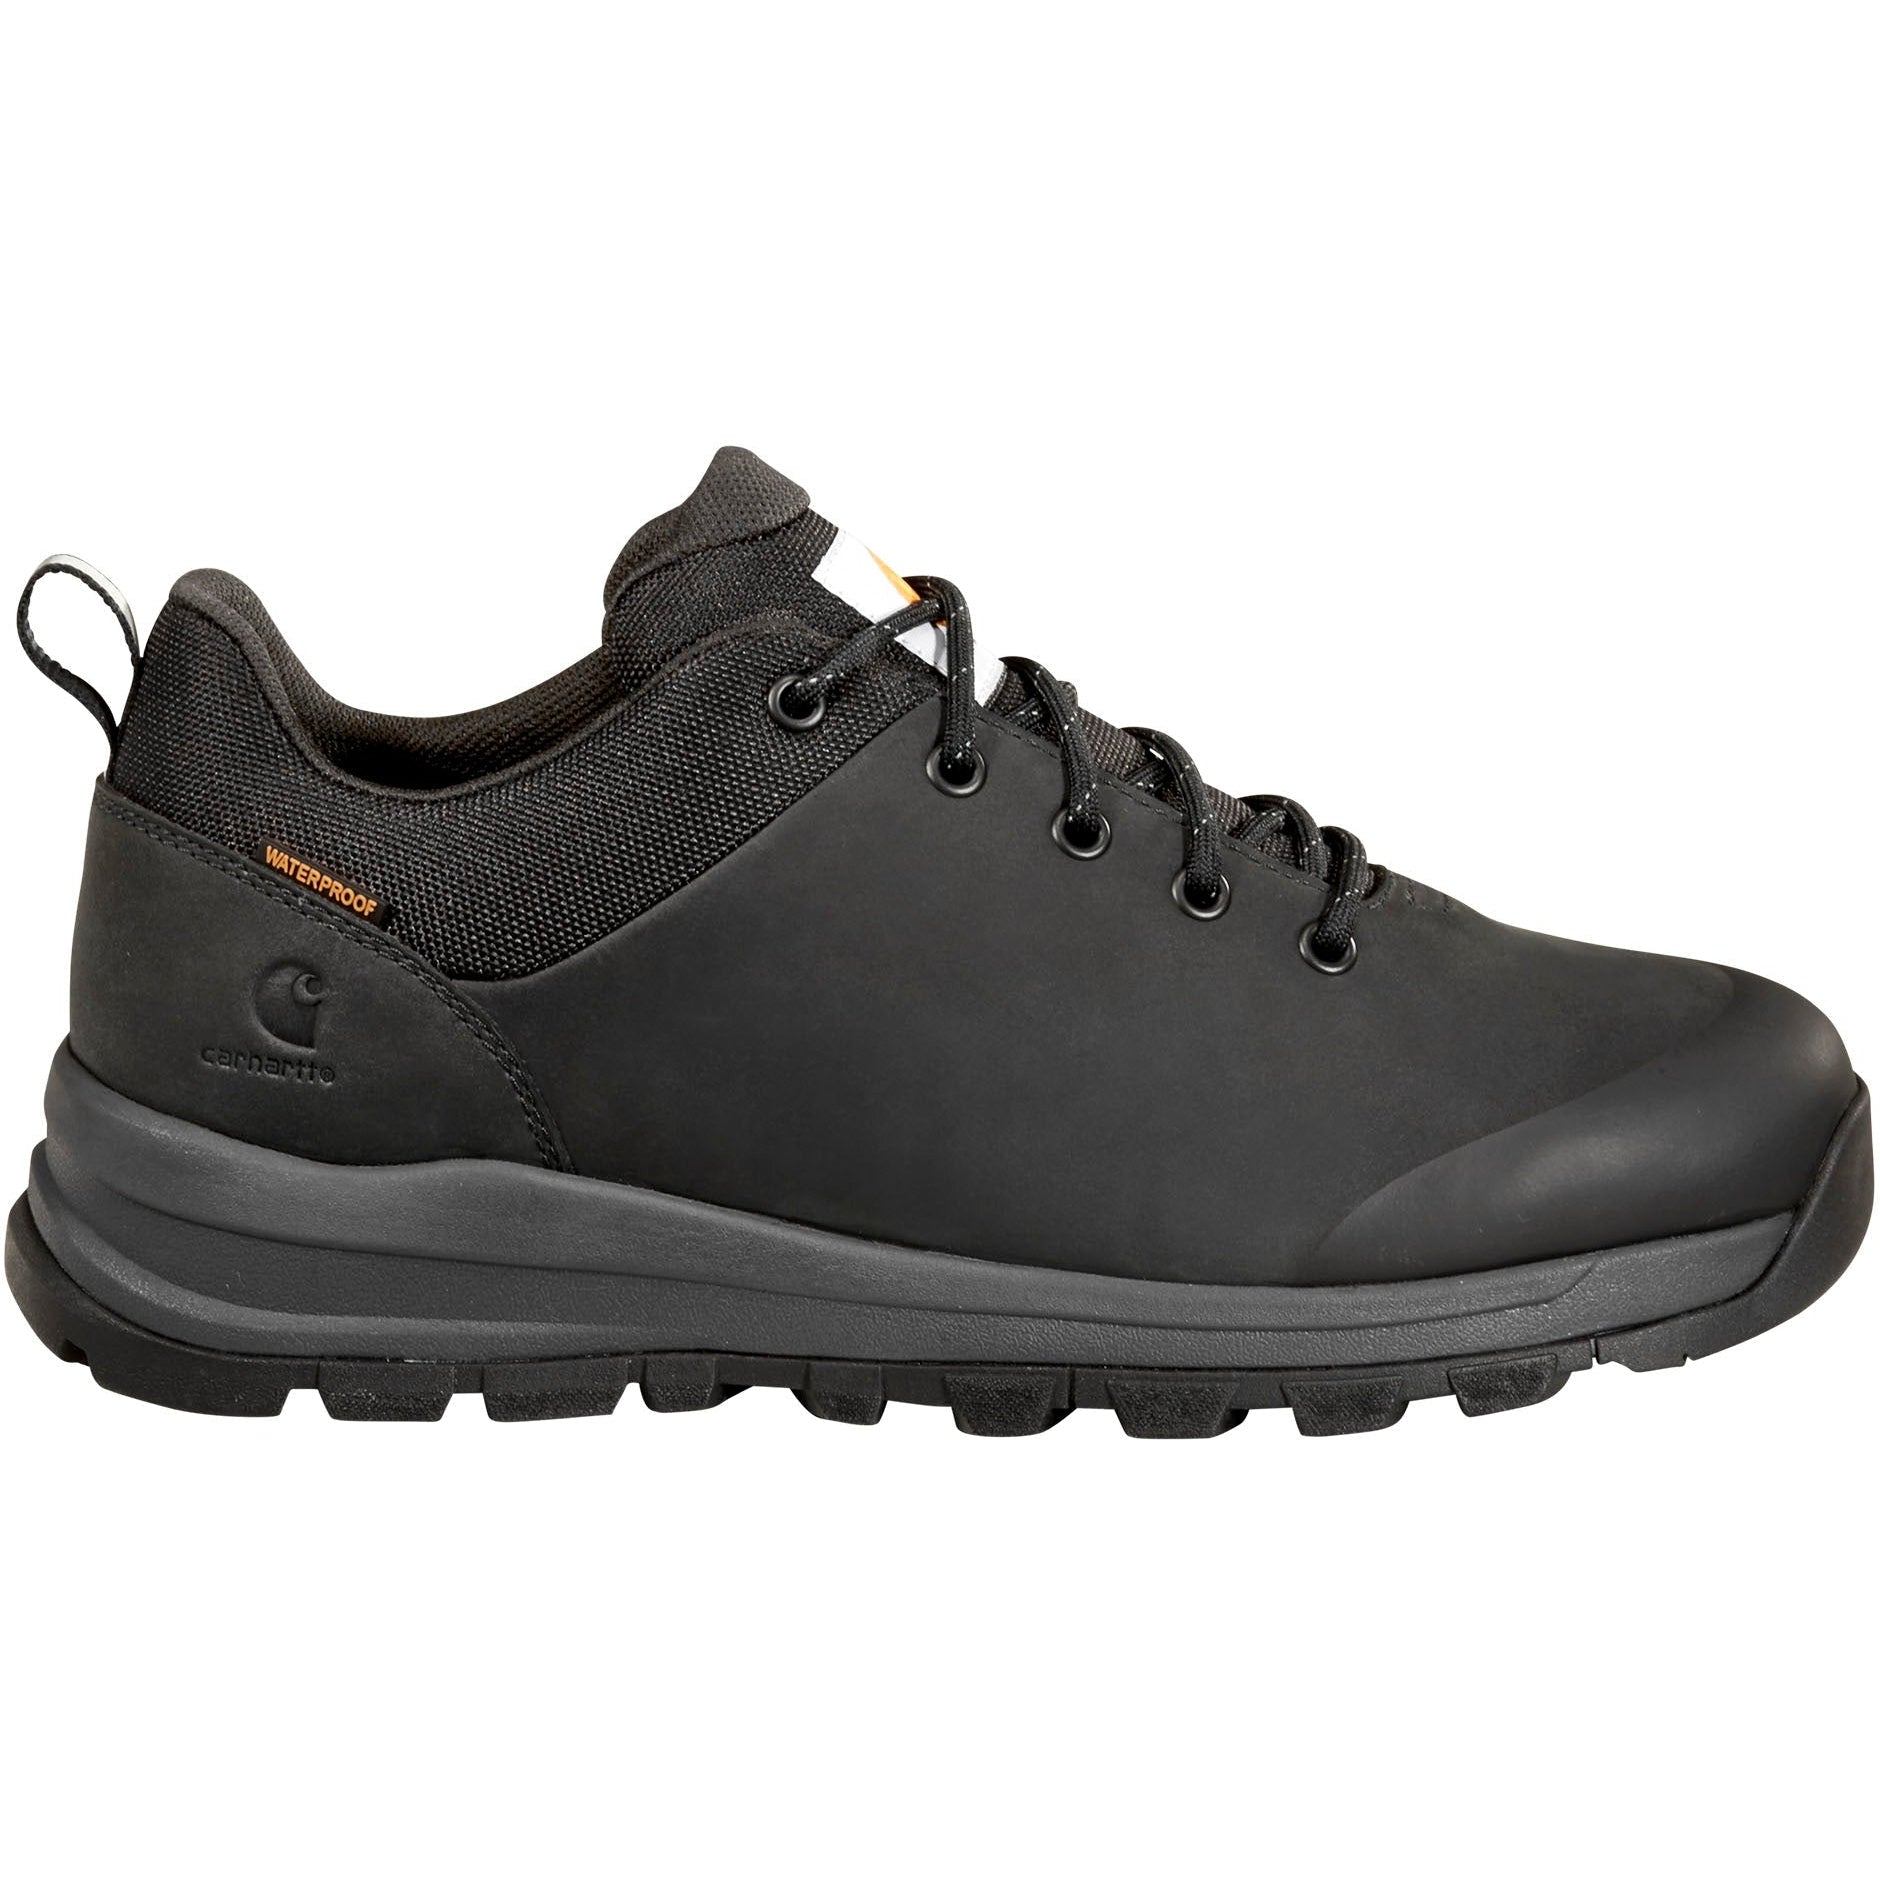 Carhartt Men's Waterproof Outdoor Low Alloy Toe Hiker Work Shoe -Black- FH3521-M 8 / Medium / Black - Overlook Boots